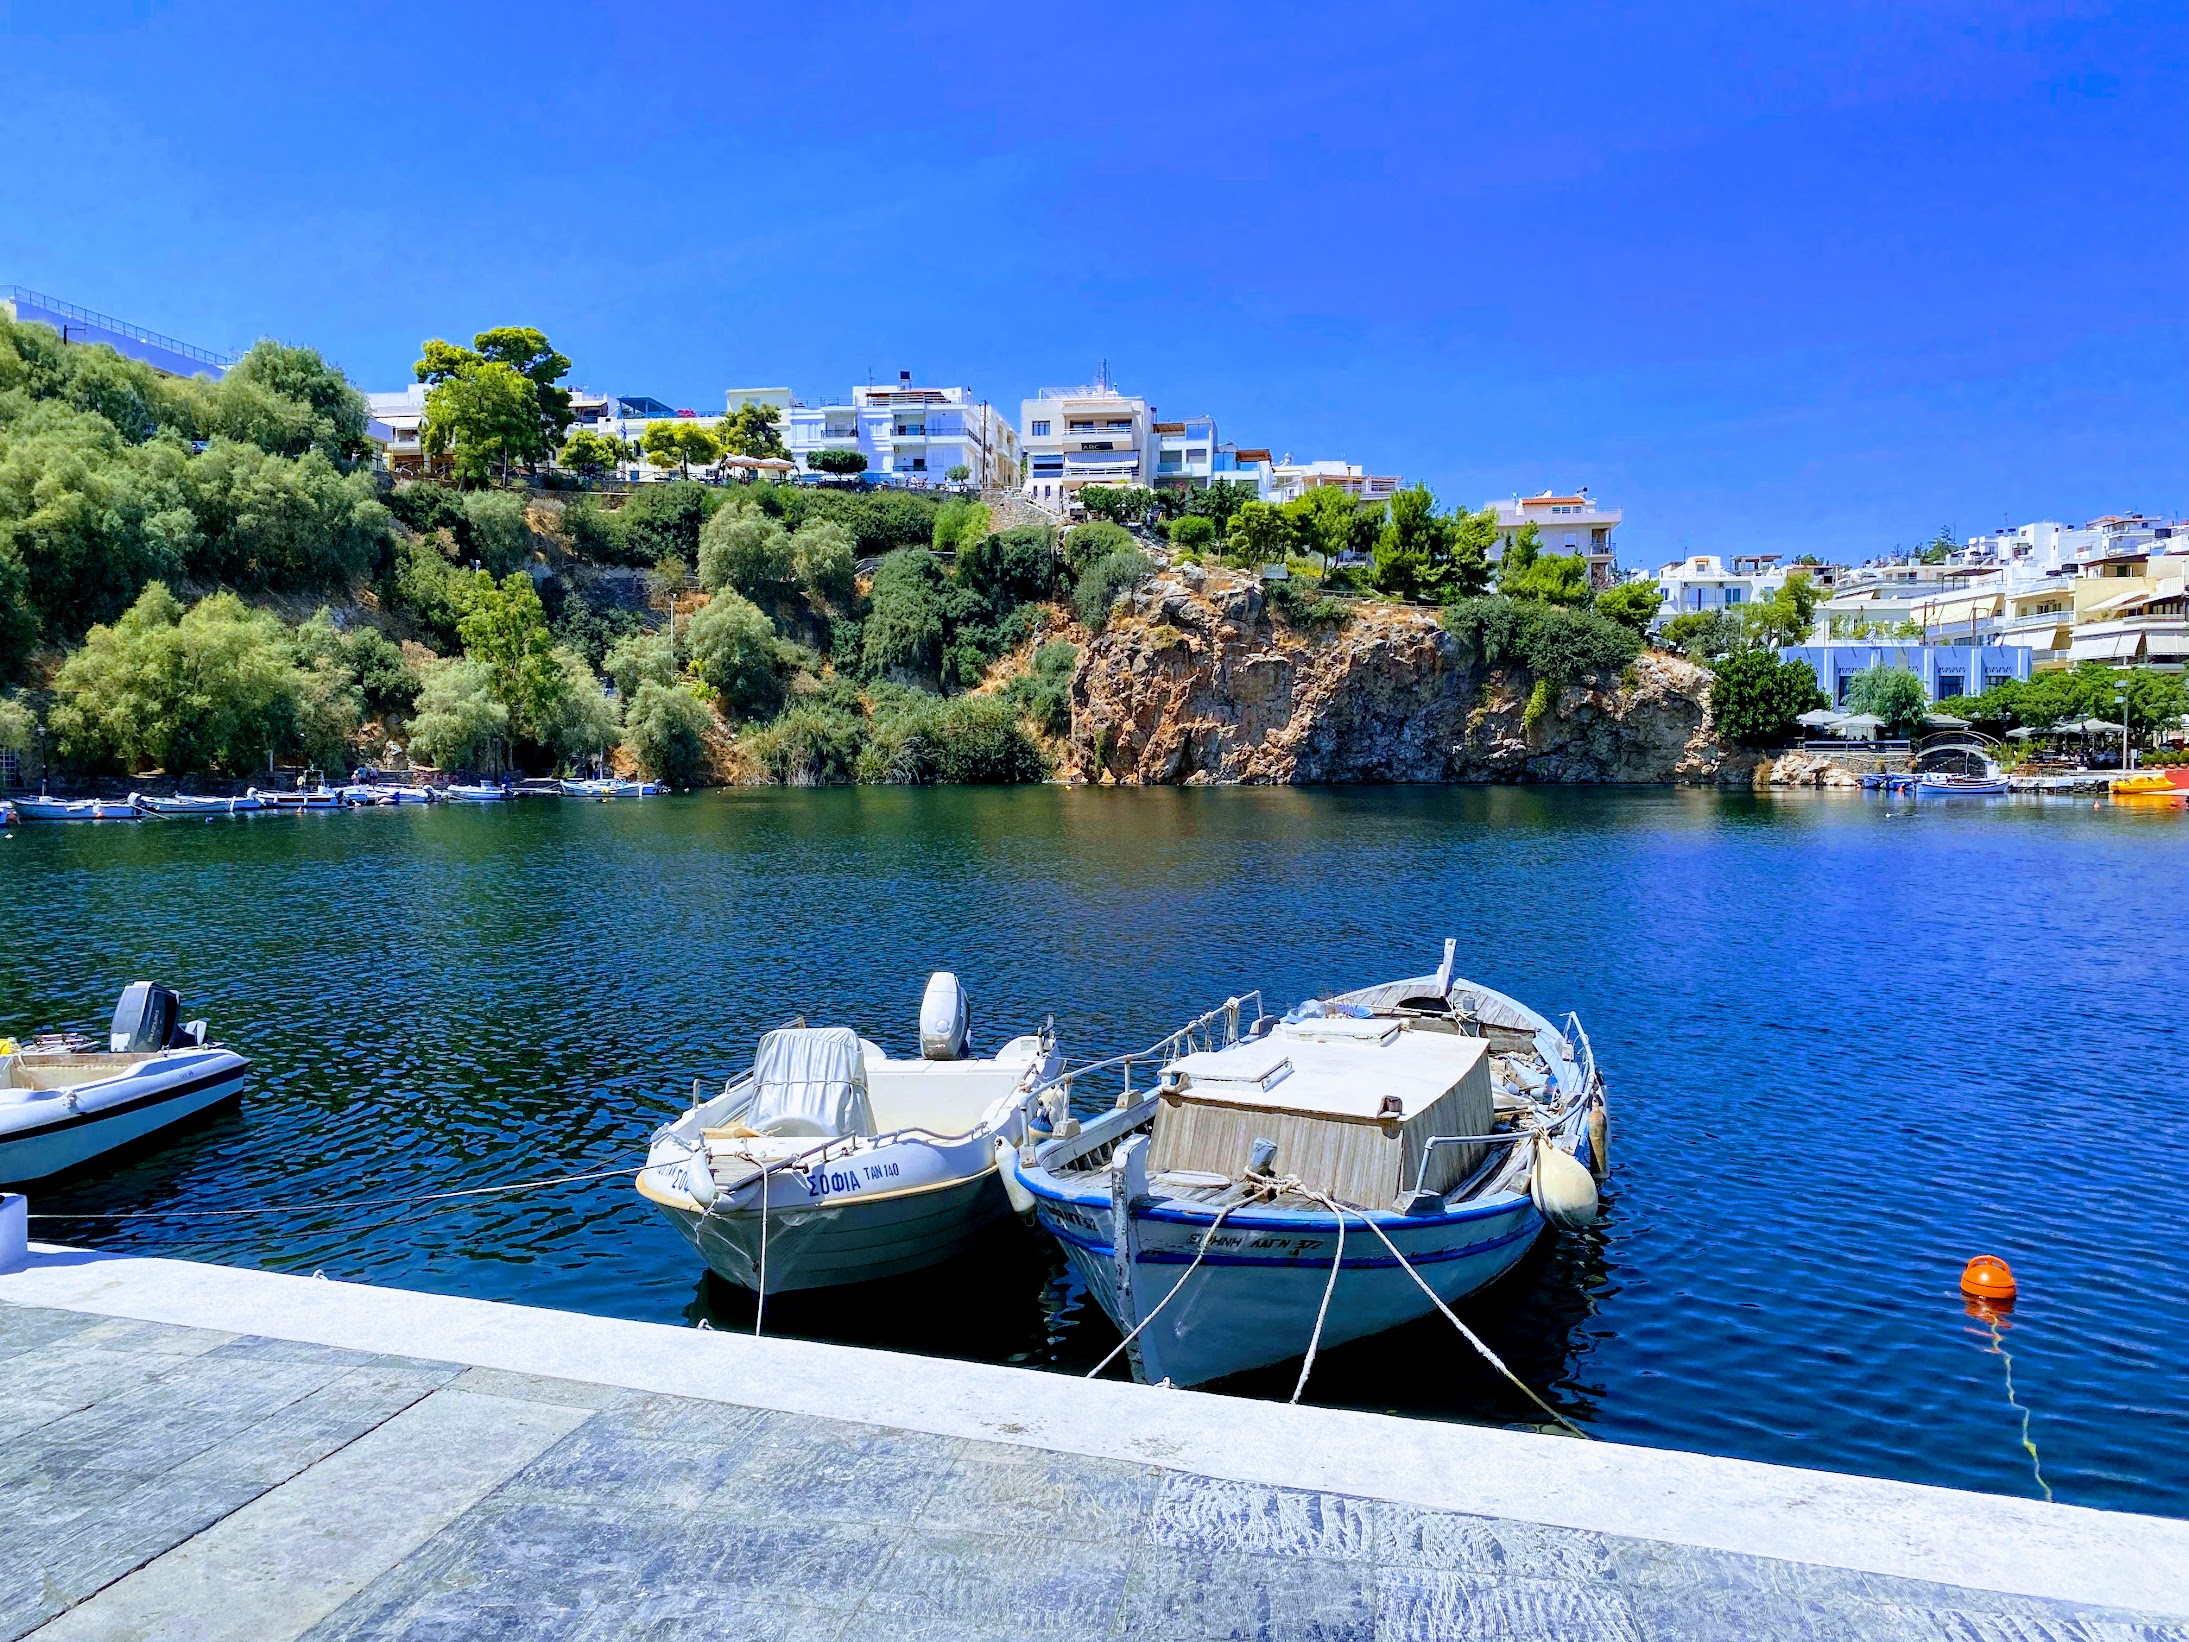 Άγιος Νικόλαος Κρήτης: Ένας υπέροχος προορισμός για διακοπές